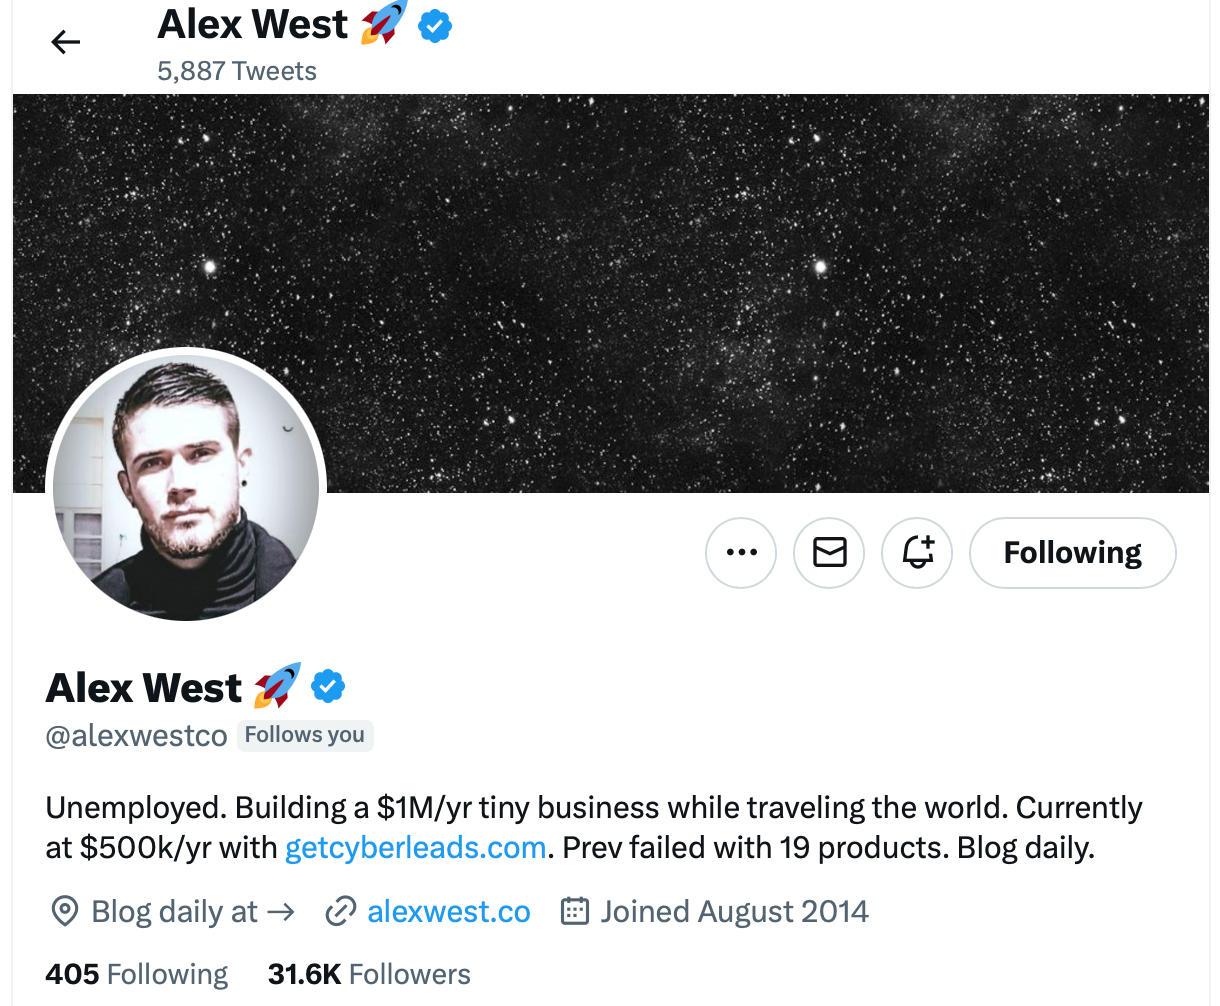 Alex West twitter account